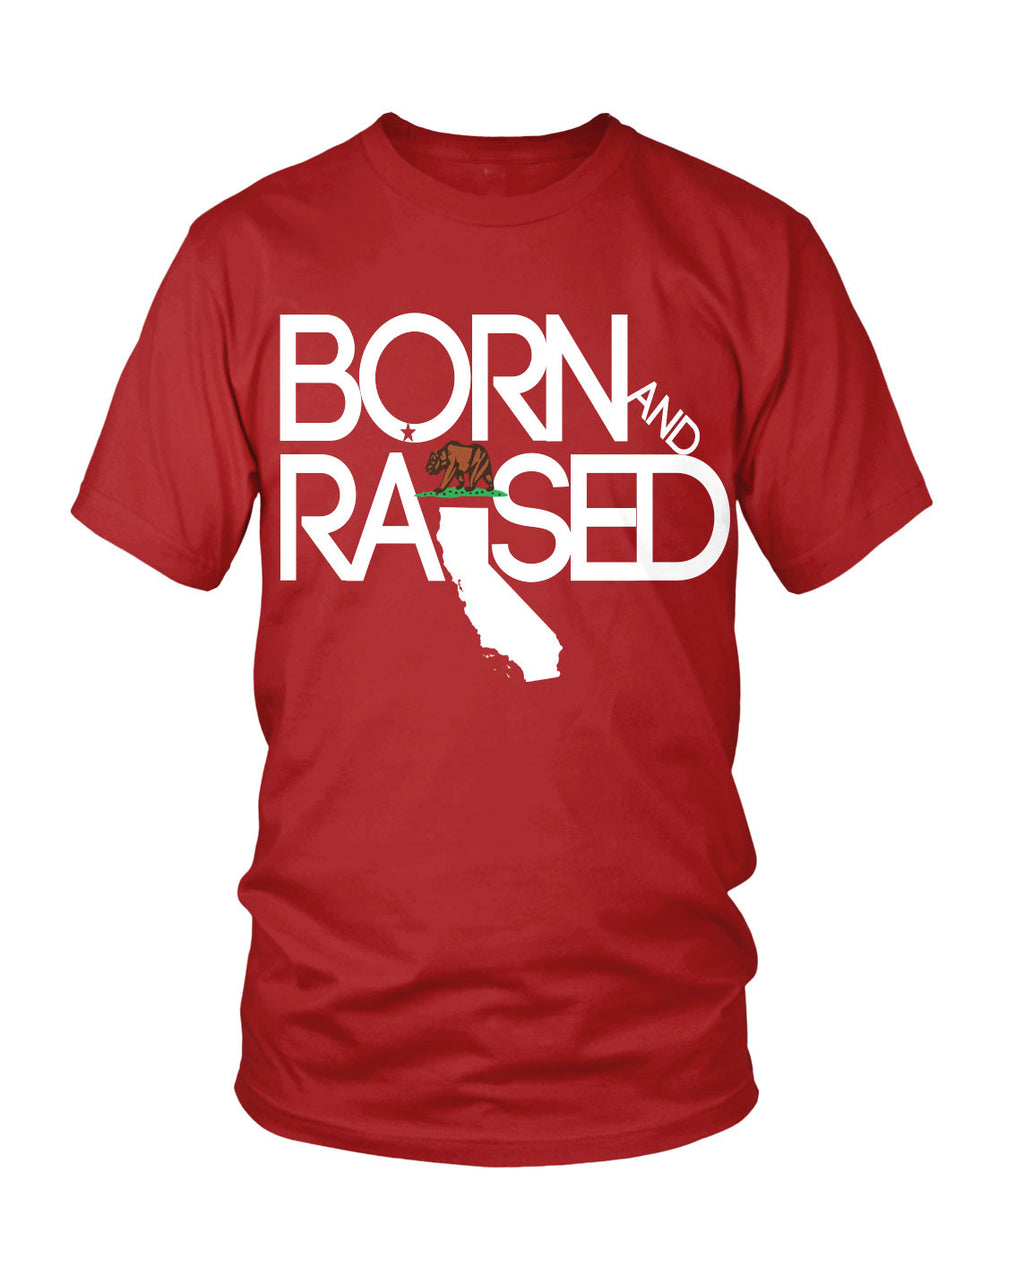 CALI: Born & Raised - Originalitees